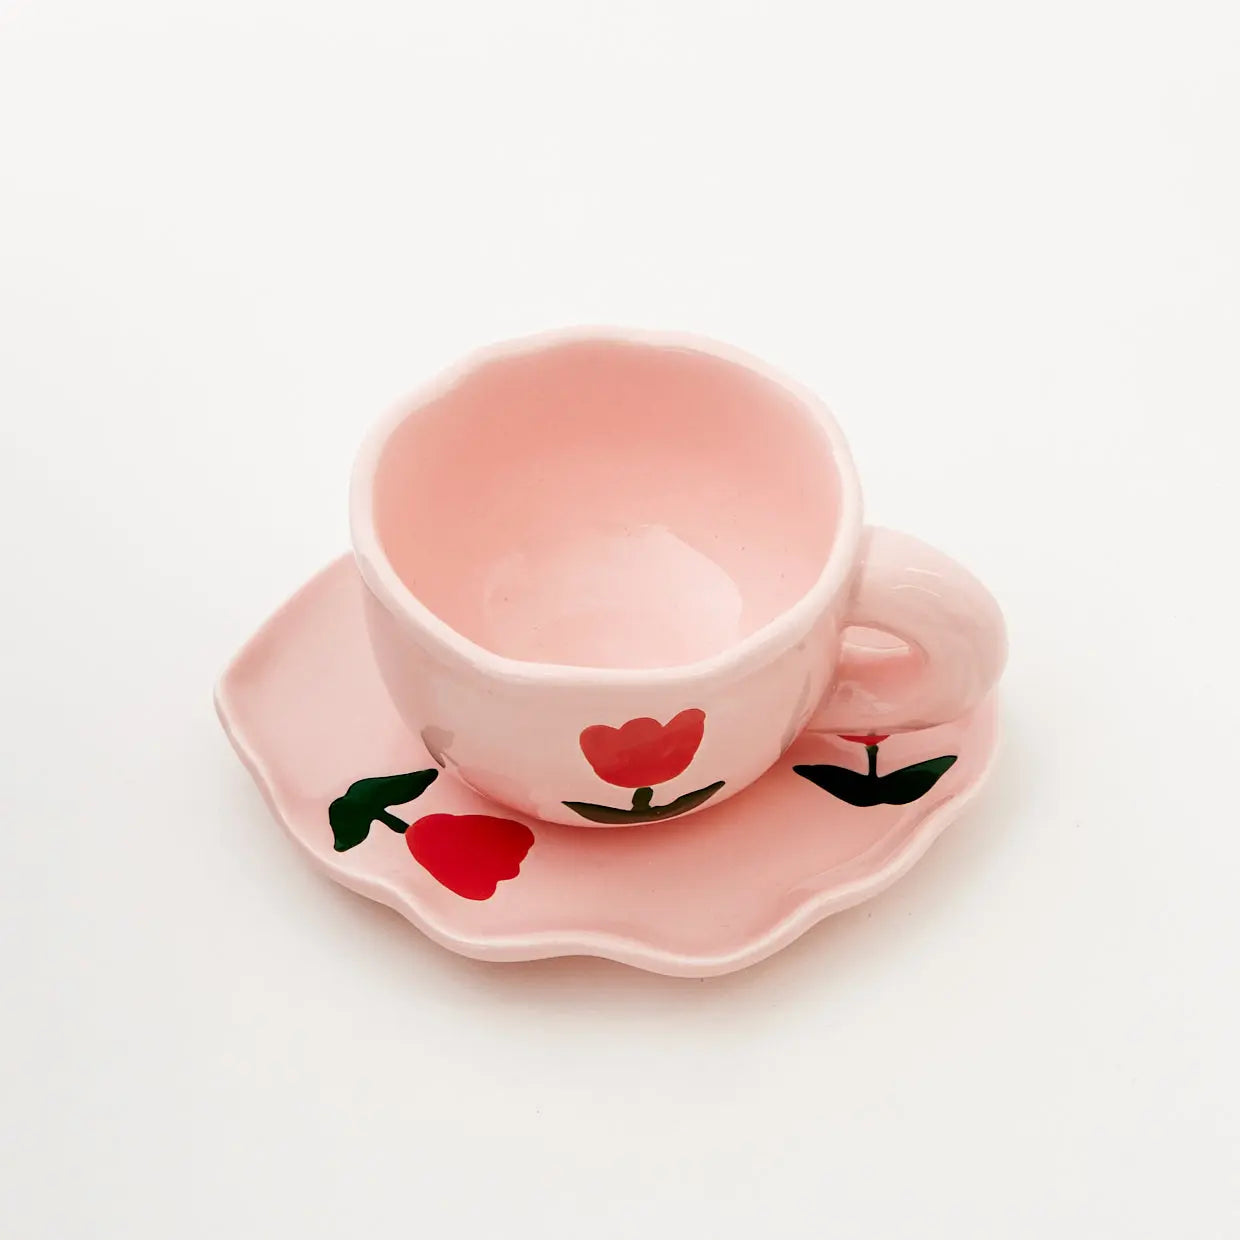 Tulip Ceramic Tea Cup and Saucer Pink - GigiandTom